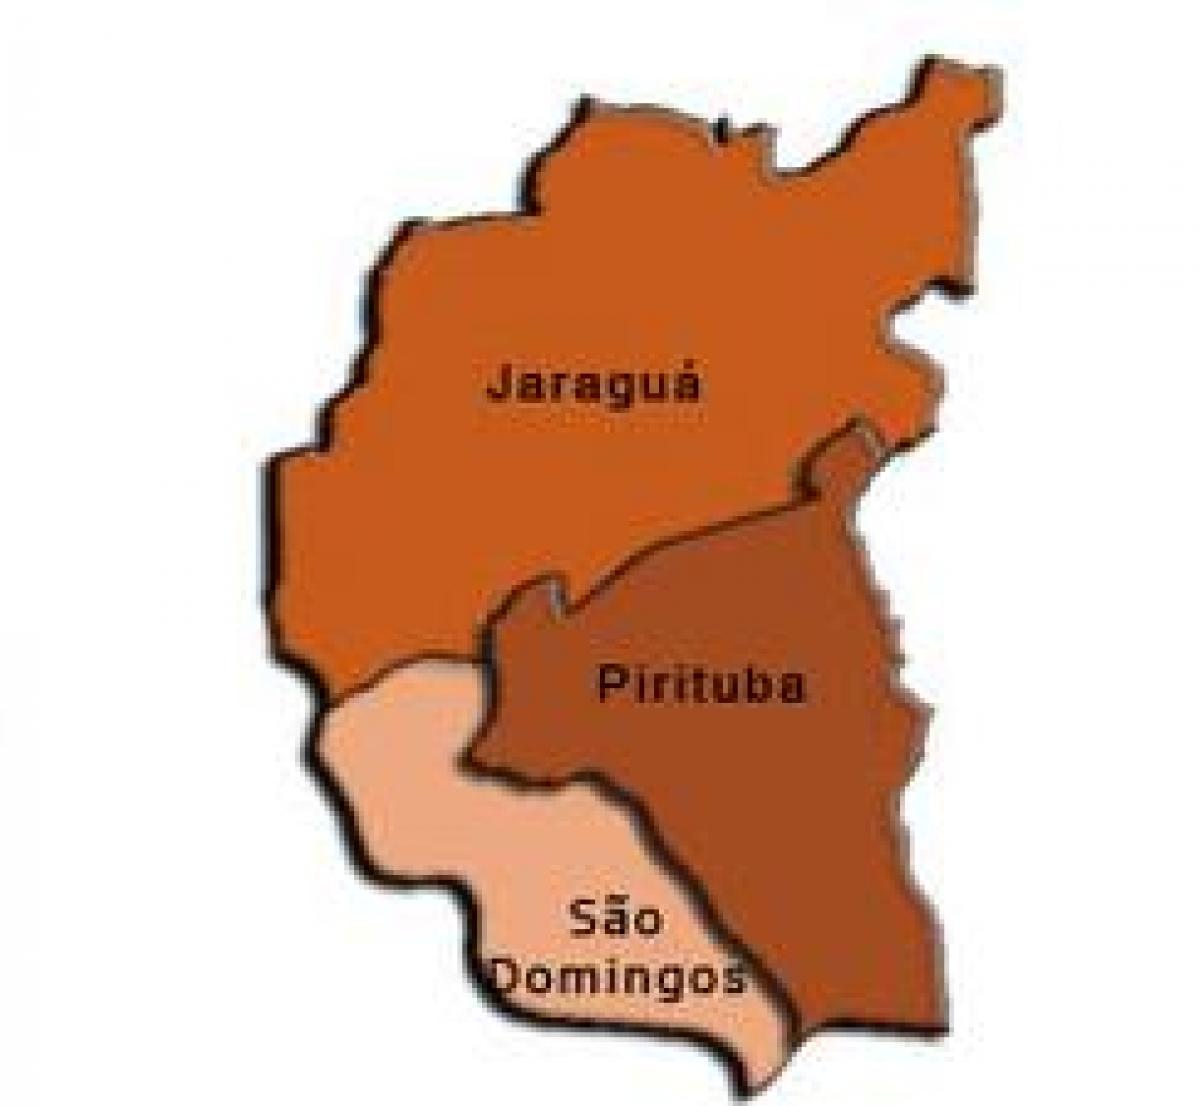 ਨਕਸ਼ਾ ਦੇ Pirituba-Jaraguá ਸਬ-prefecture